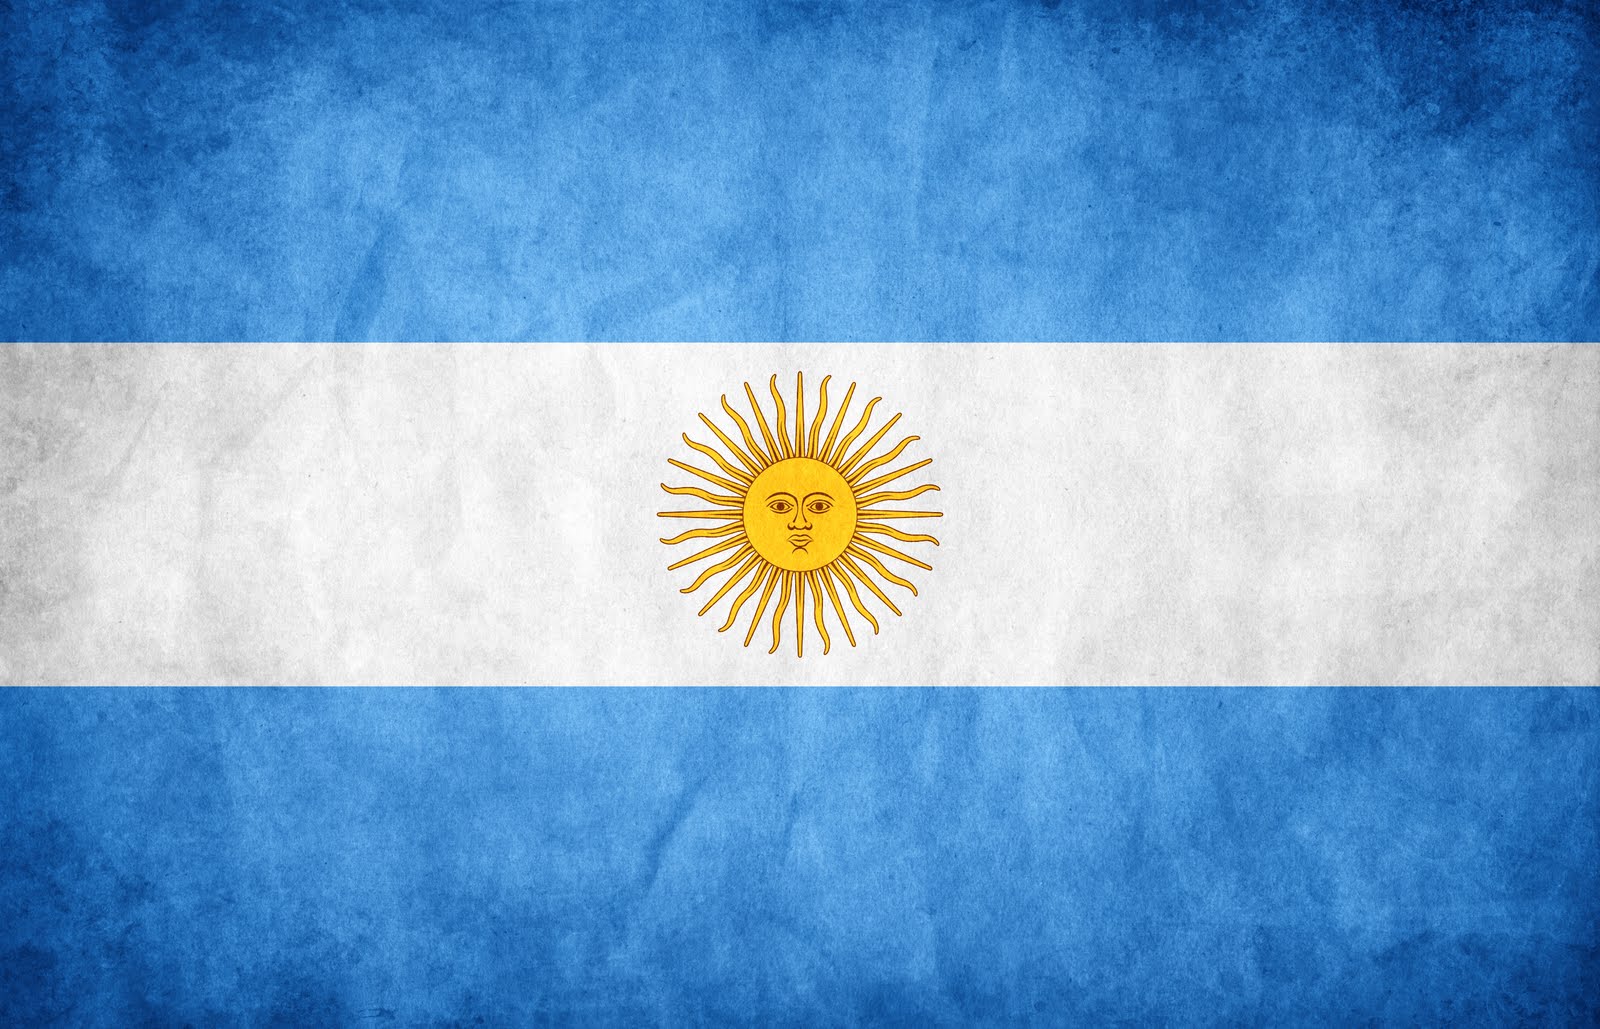 Image Bandera Argentina 1 Diablo Wiki Fandom Powered By Wikia